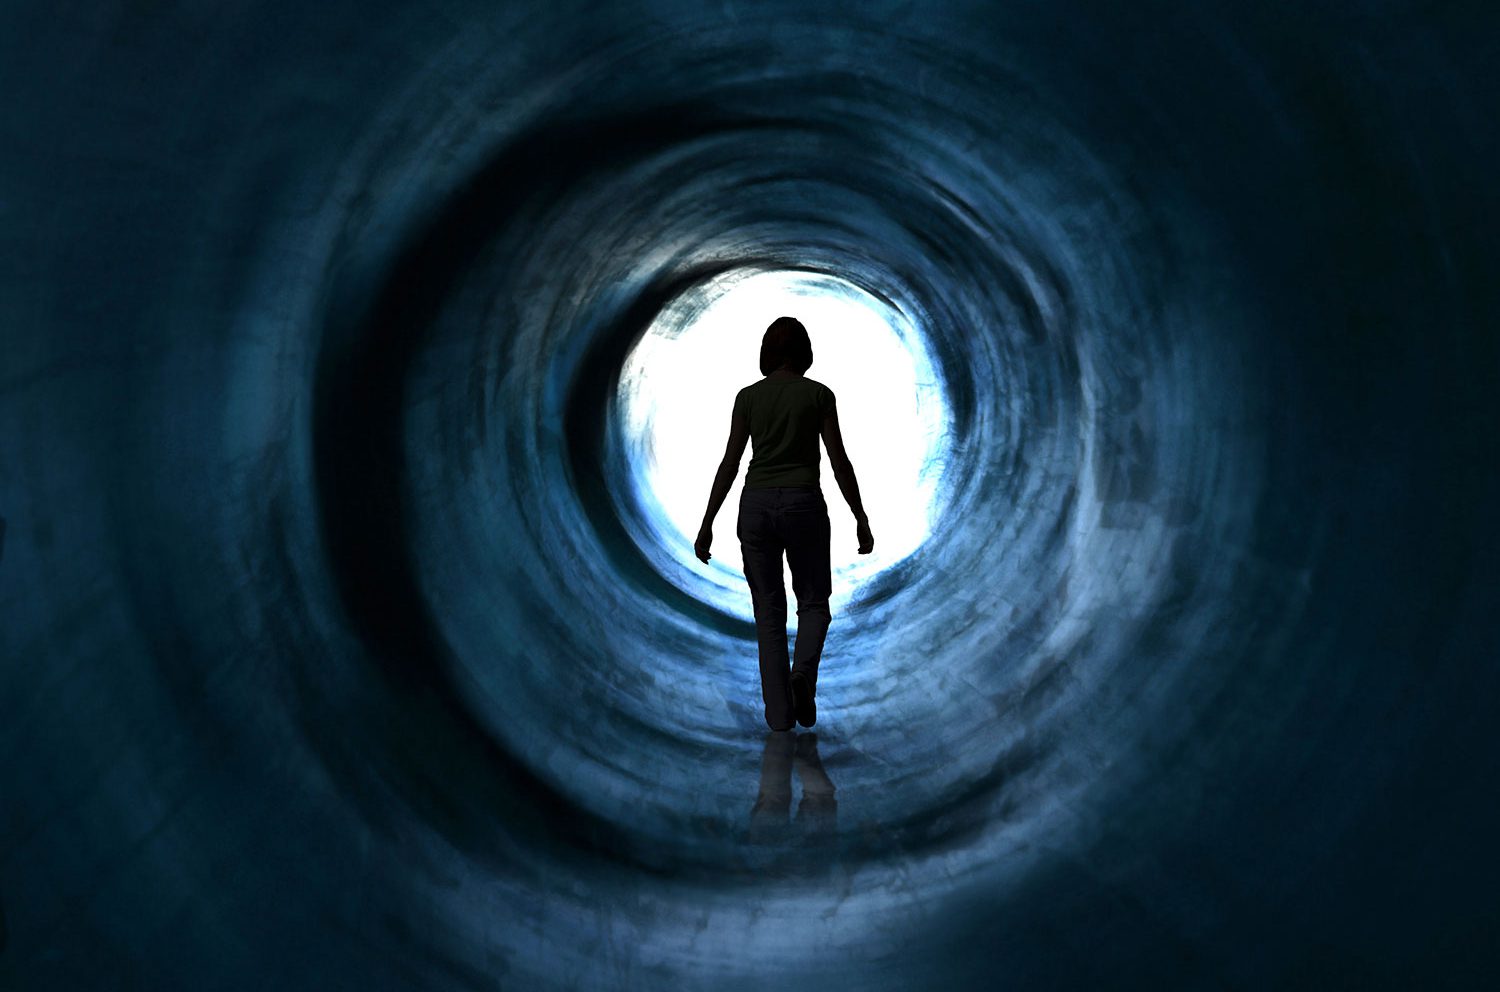 تصاویر یک شخص در یک تونل تاریک که نمادی از ناامیدی در زندگی است که به تصویر کشیده شده است